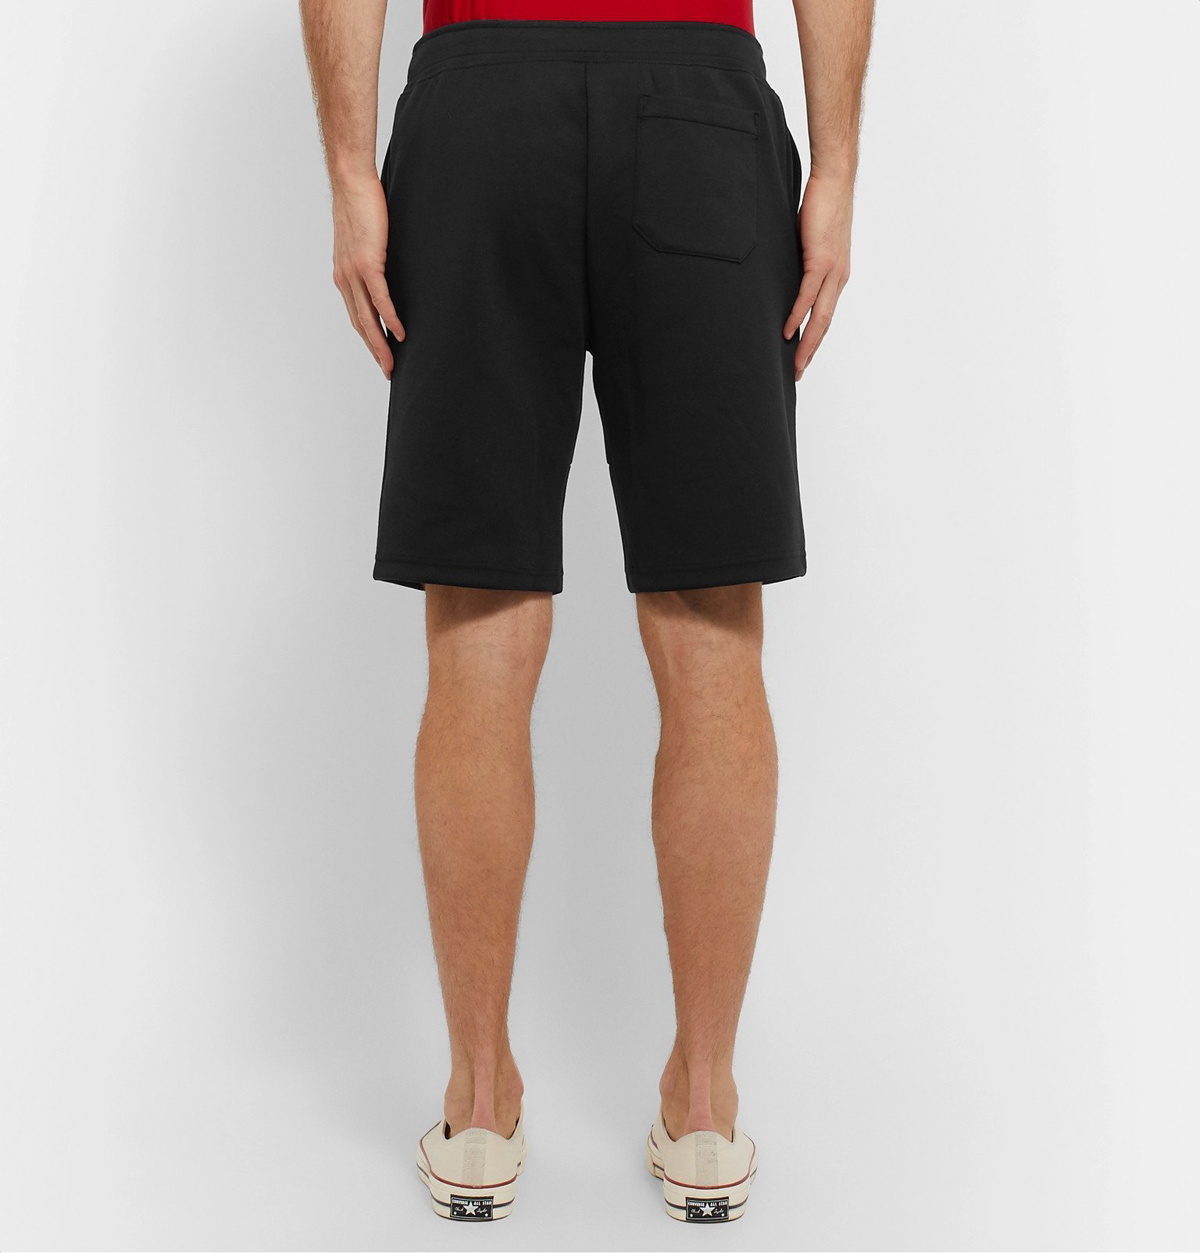 Polo Ralph Lauren Drawstring Shorts for Men